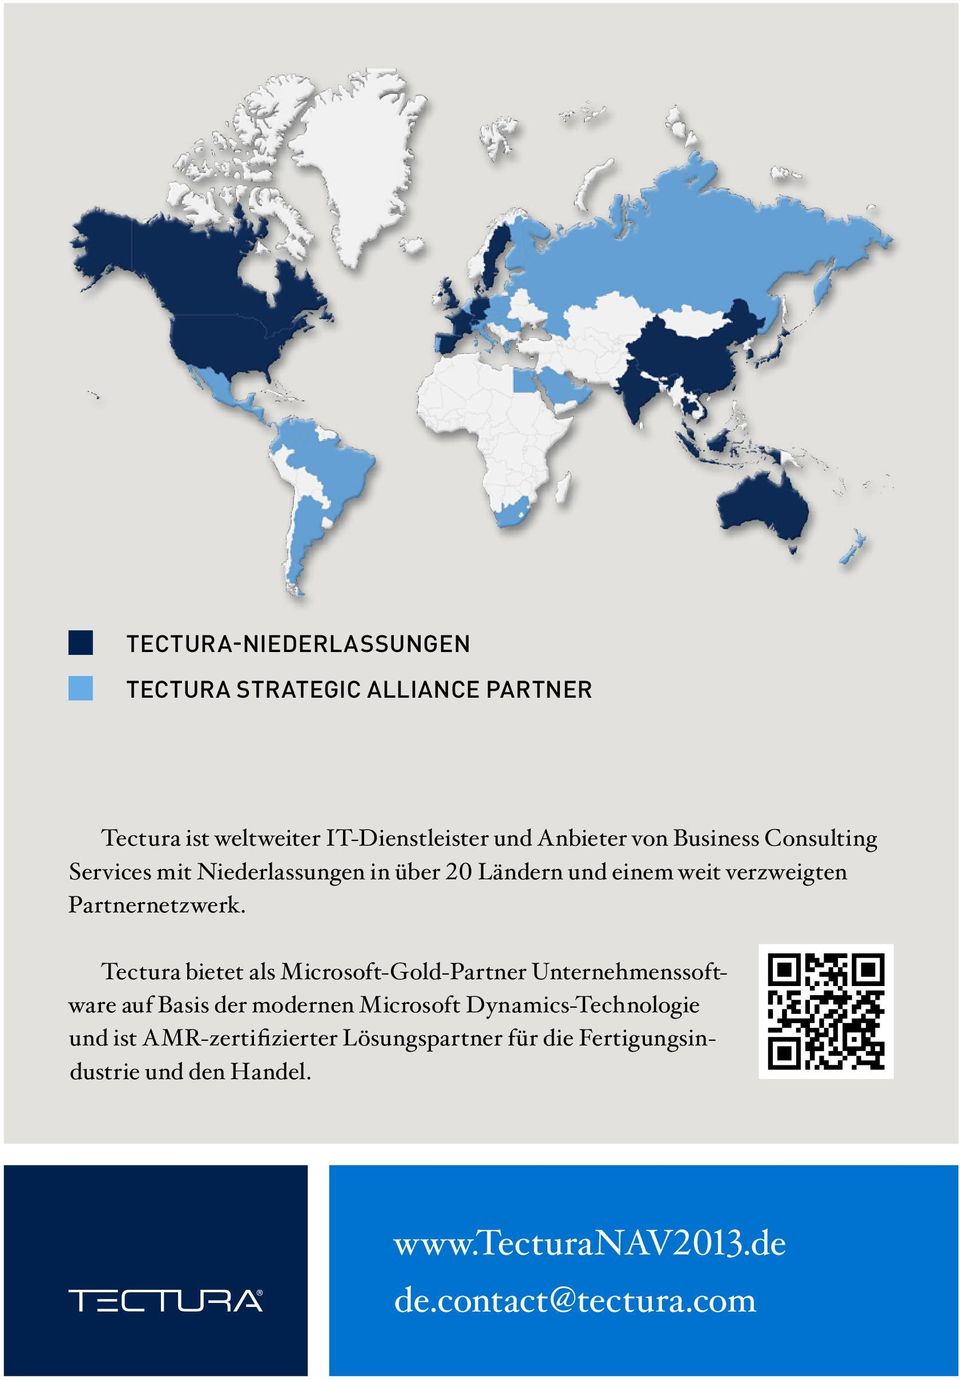 Tectura bietet als Microsoft-Gold-Partner Unternehmenssoftware auf Basis der modernen Microsoft Dynamics-Technologie